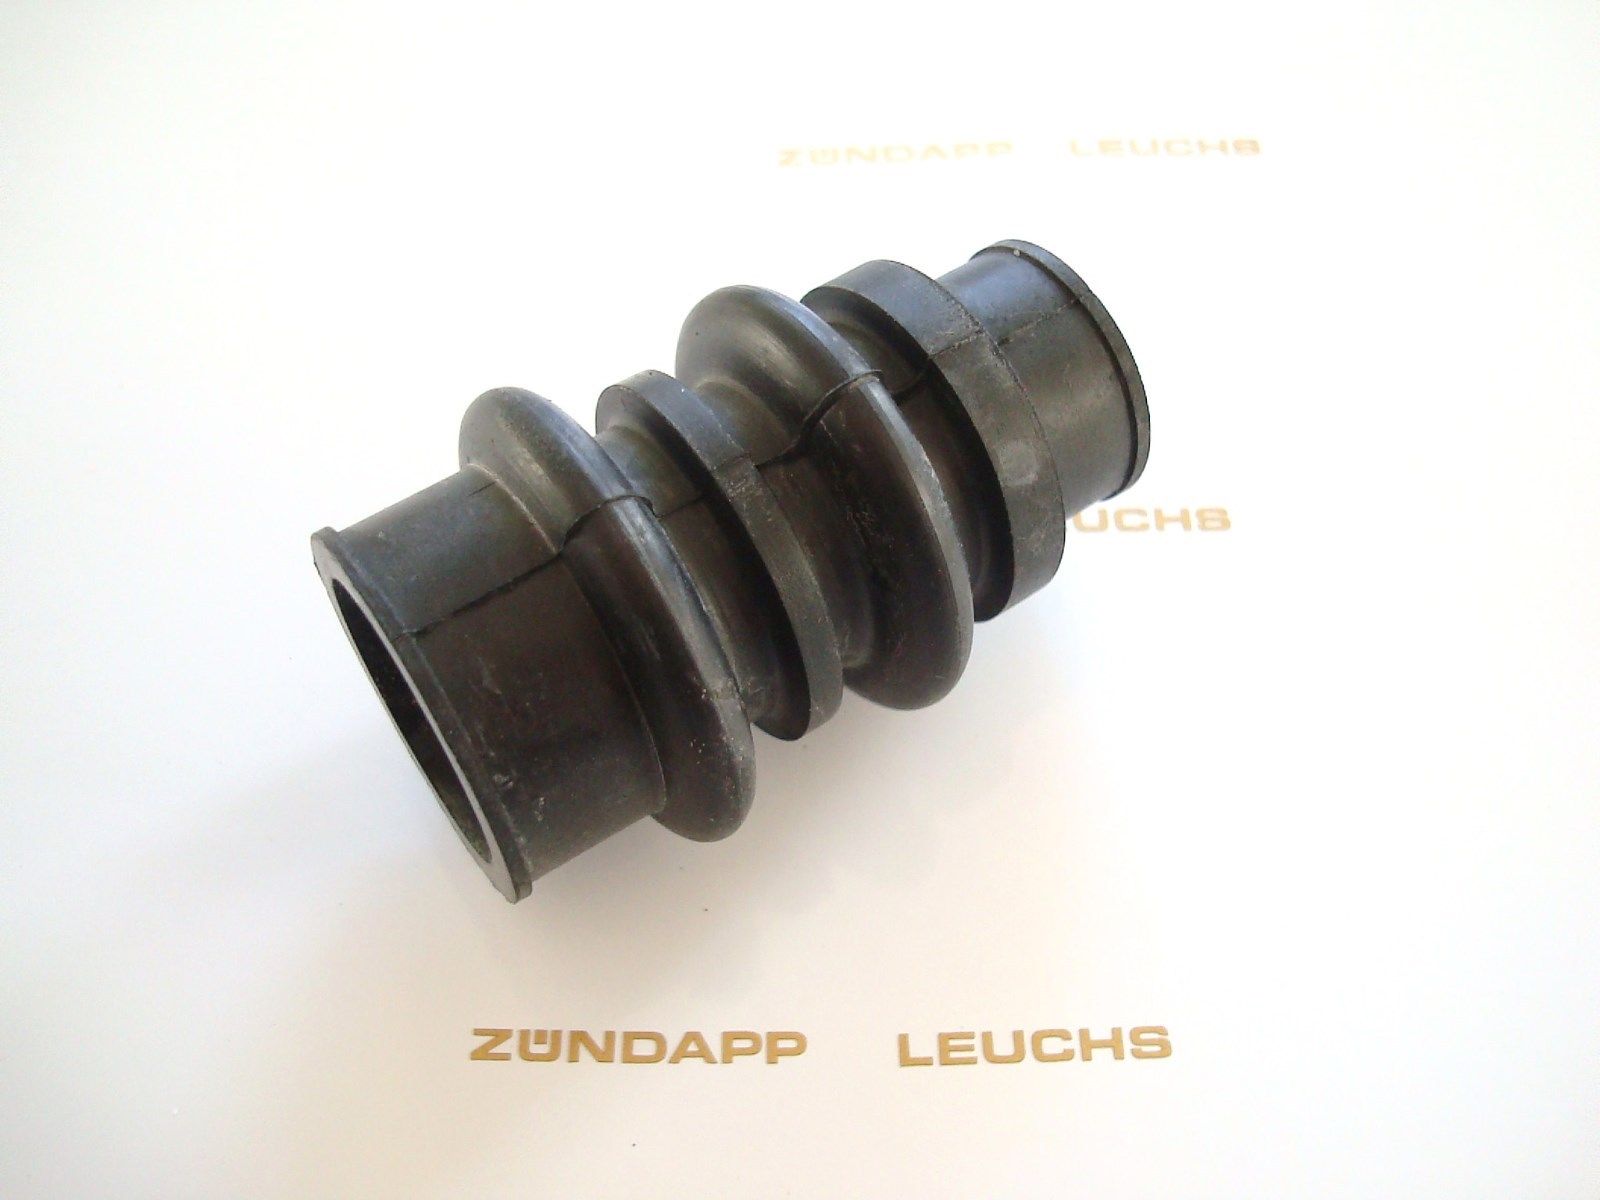 Zündapp® Dienst Leuchs Shop - Zündapp 2 x M7 x 55mm Schraube für Sitzbank /  Heckteil